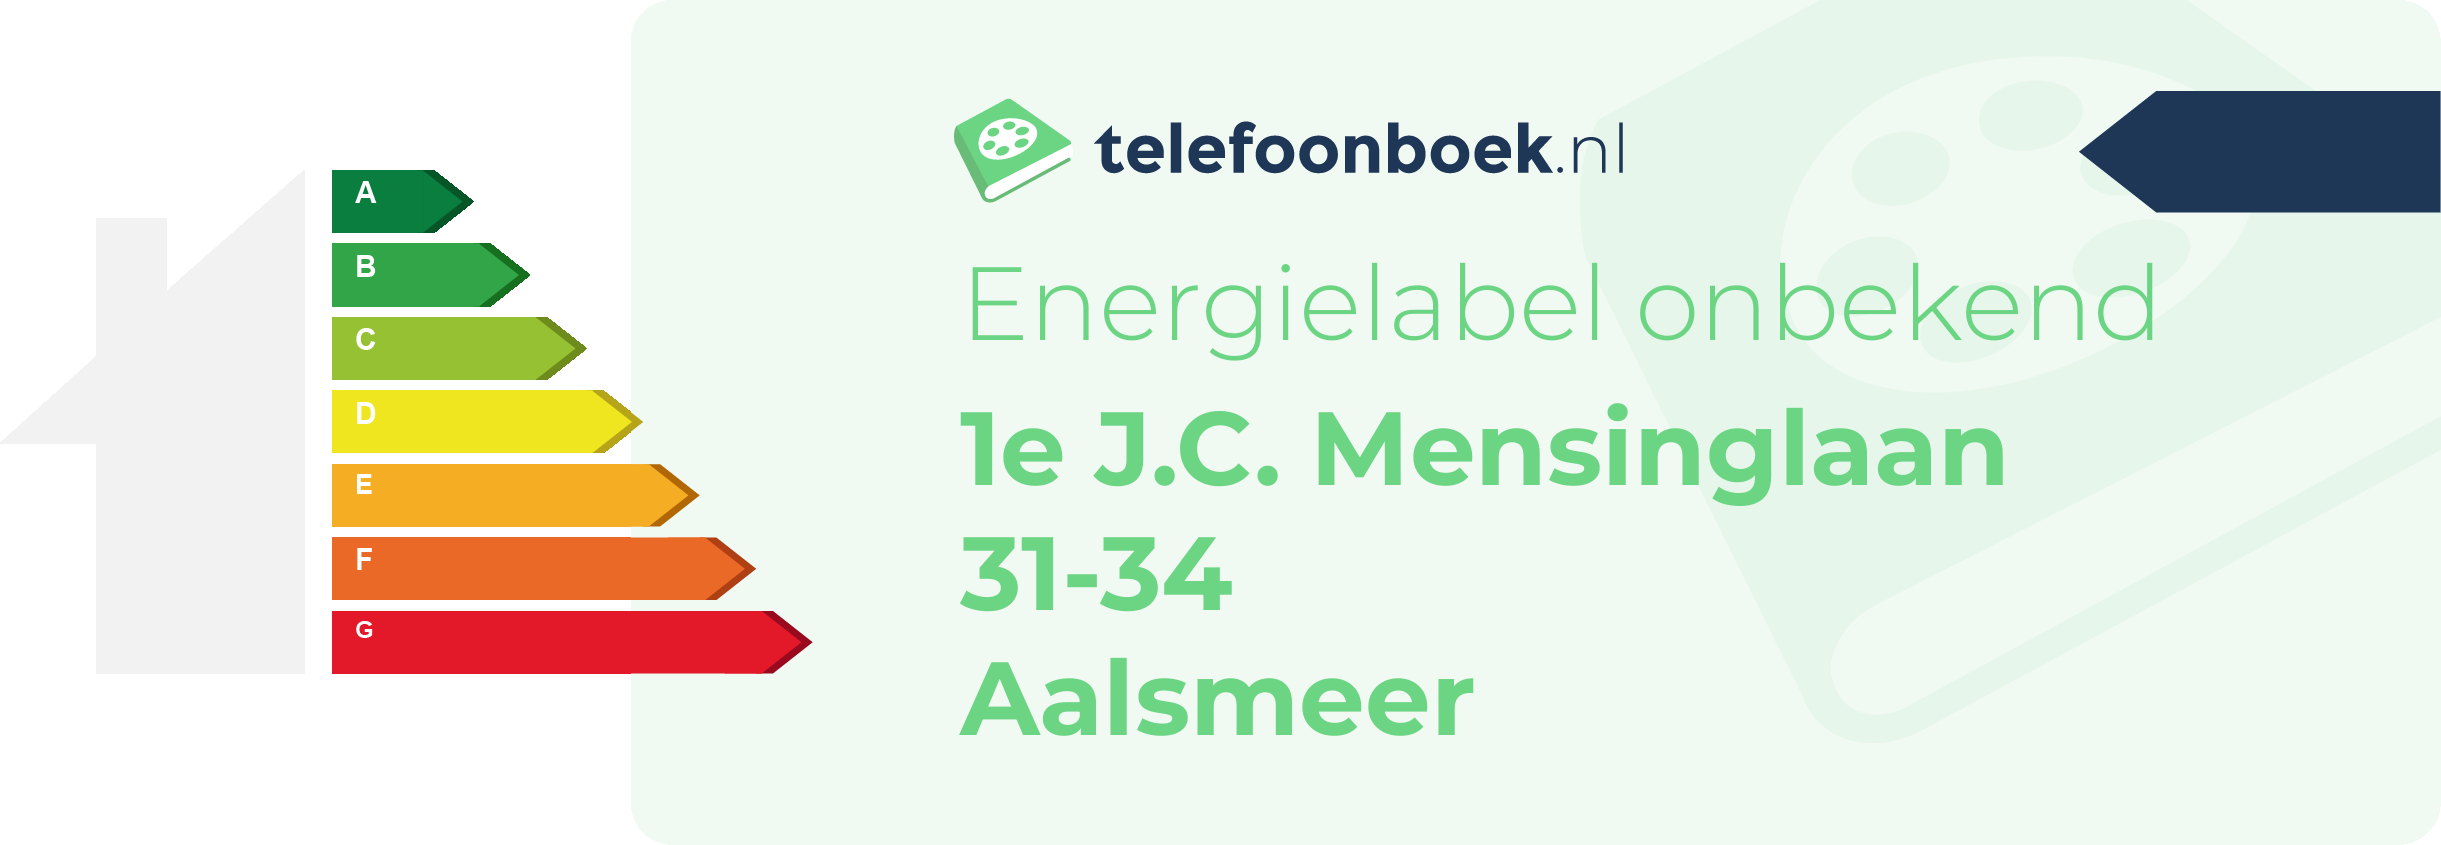 Energielabel 1e J.C. Mensinglaan 31-34 Aalsmeer